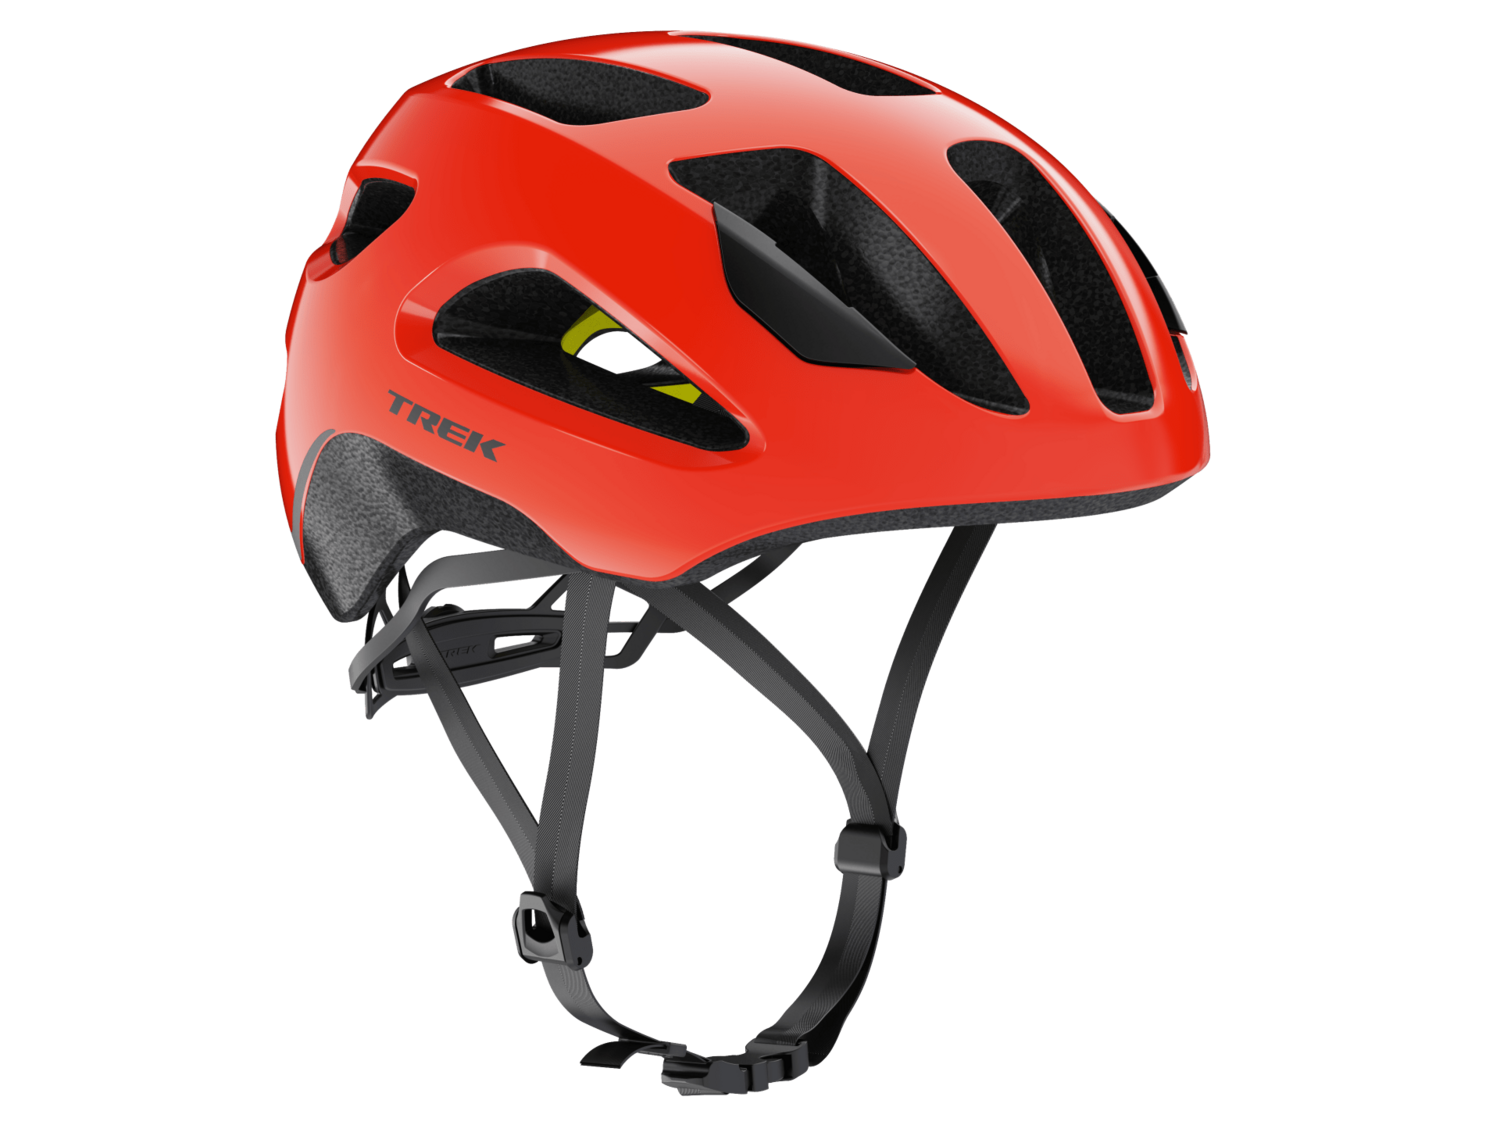 Trek Solstice Mips Bike Helmet - Radioactive Red